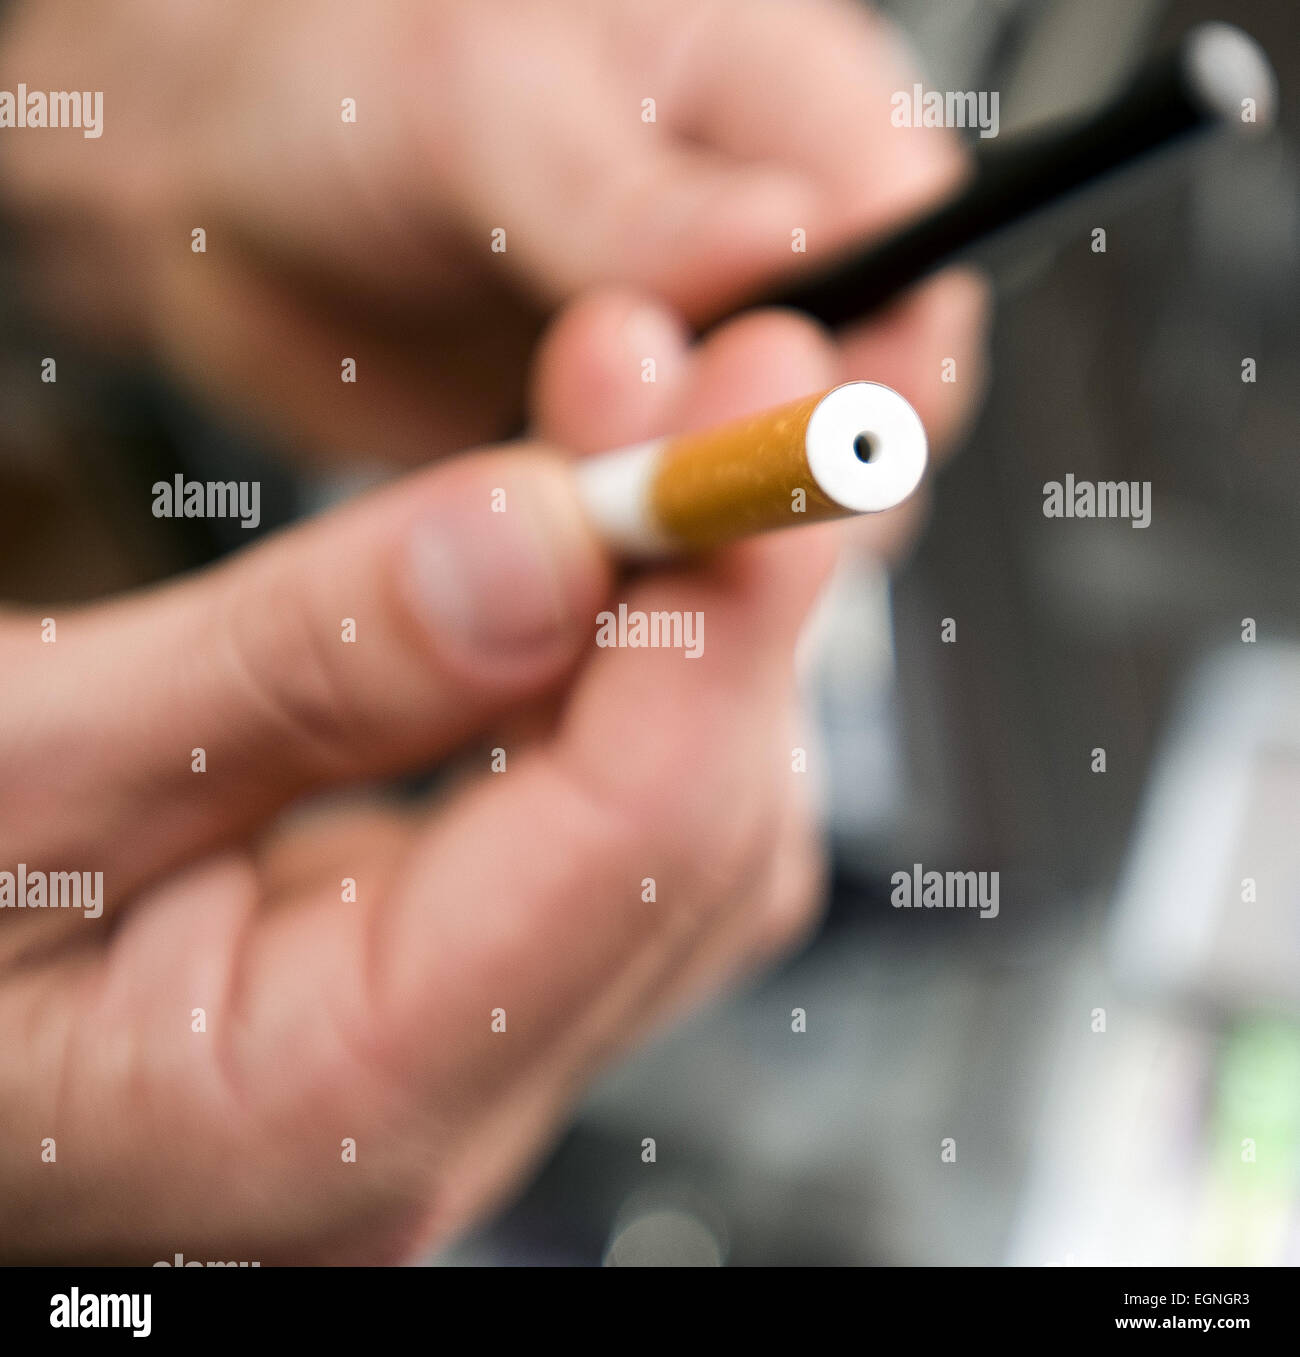 Orange County, Kalifornien, USA. 30. August 2012. Elektronische Zigaretten weiterhin Zugkraft zu gewinnen, wie traditionelle Zigarettenraucher suchen Sie etwas anderes in der Benutzerfreundlichkeit, Geschmack und Kosteneinsparungen zu erzielen. E-Cigs verdampfen aromatisiert Säfte in einen Dampf, der eingeatmet wird, genauso wie herkömmliche Zigaretten konsumiert werden. Säfte können mit verschiedenen Niveaus des Nikotins aromatisiert werden. Da e-Cig 'Rauch' oder Dampf schnell zerstreut, können e-Cig Nutzer häufig in Bereichen, die durch normale Zigaretten eingeschränkt zu verwenden. ---A kleines Loch an der Spitze einer e-Cig, wo der Dampf wird eingeatmet. (Kredit-Bild: © David Bro / Stockfoto